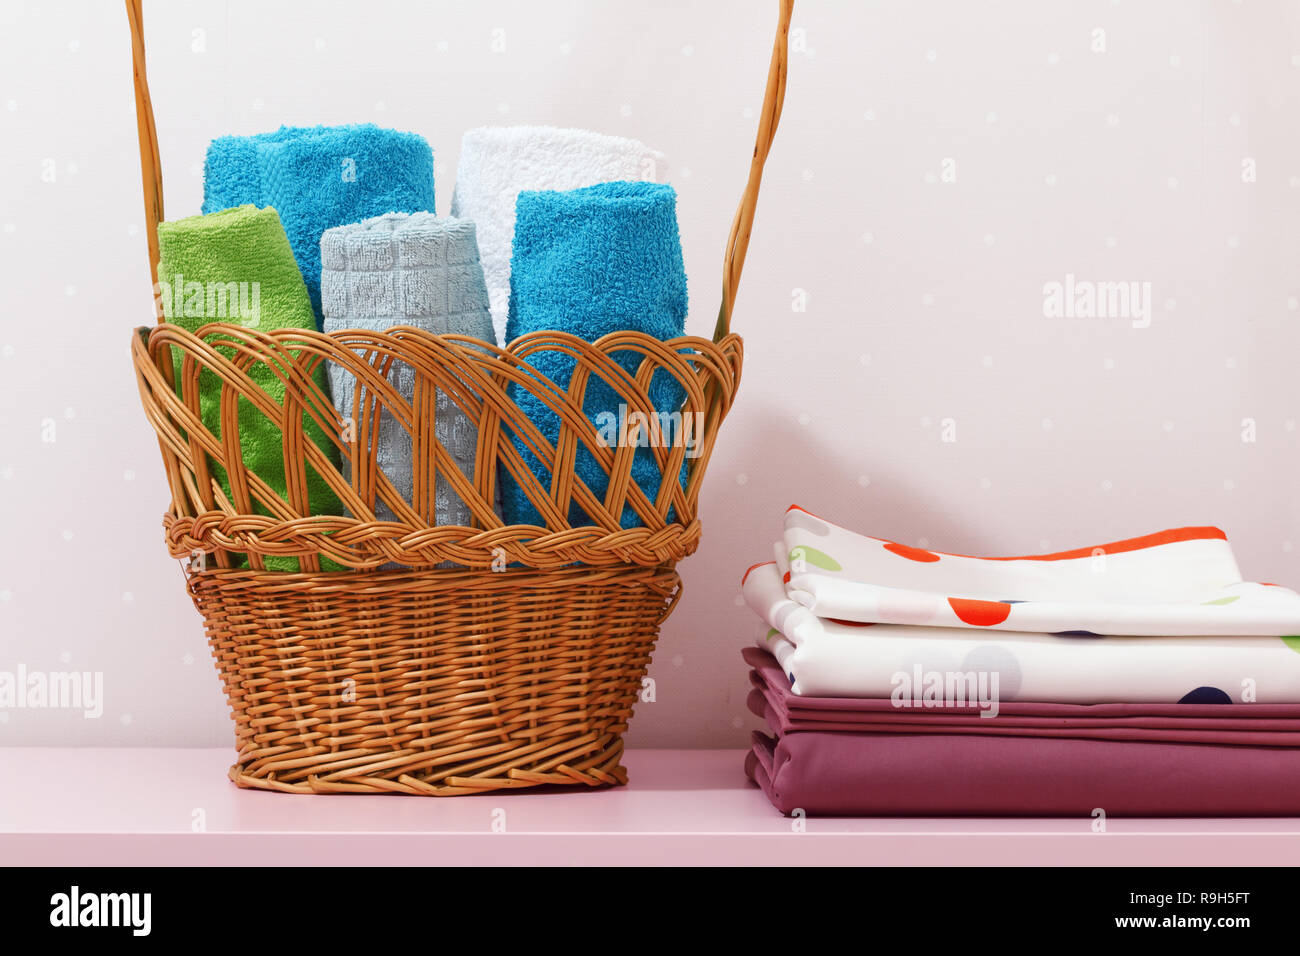 57,699 en la categoría «Clean clothes in basket» de fotos e imágenes de  stock libres de regalías